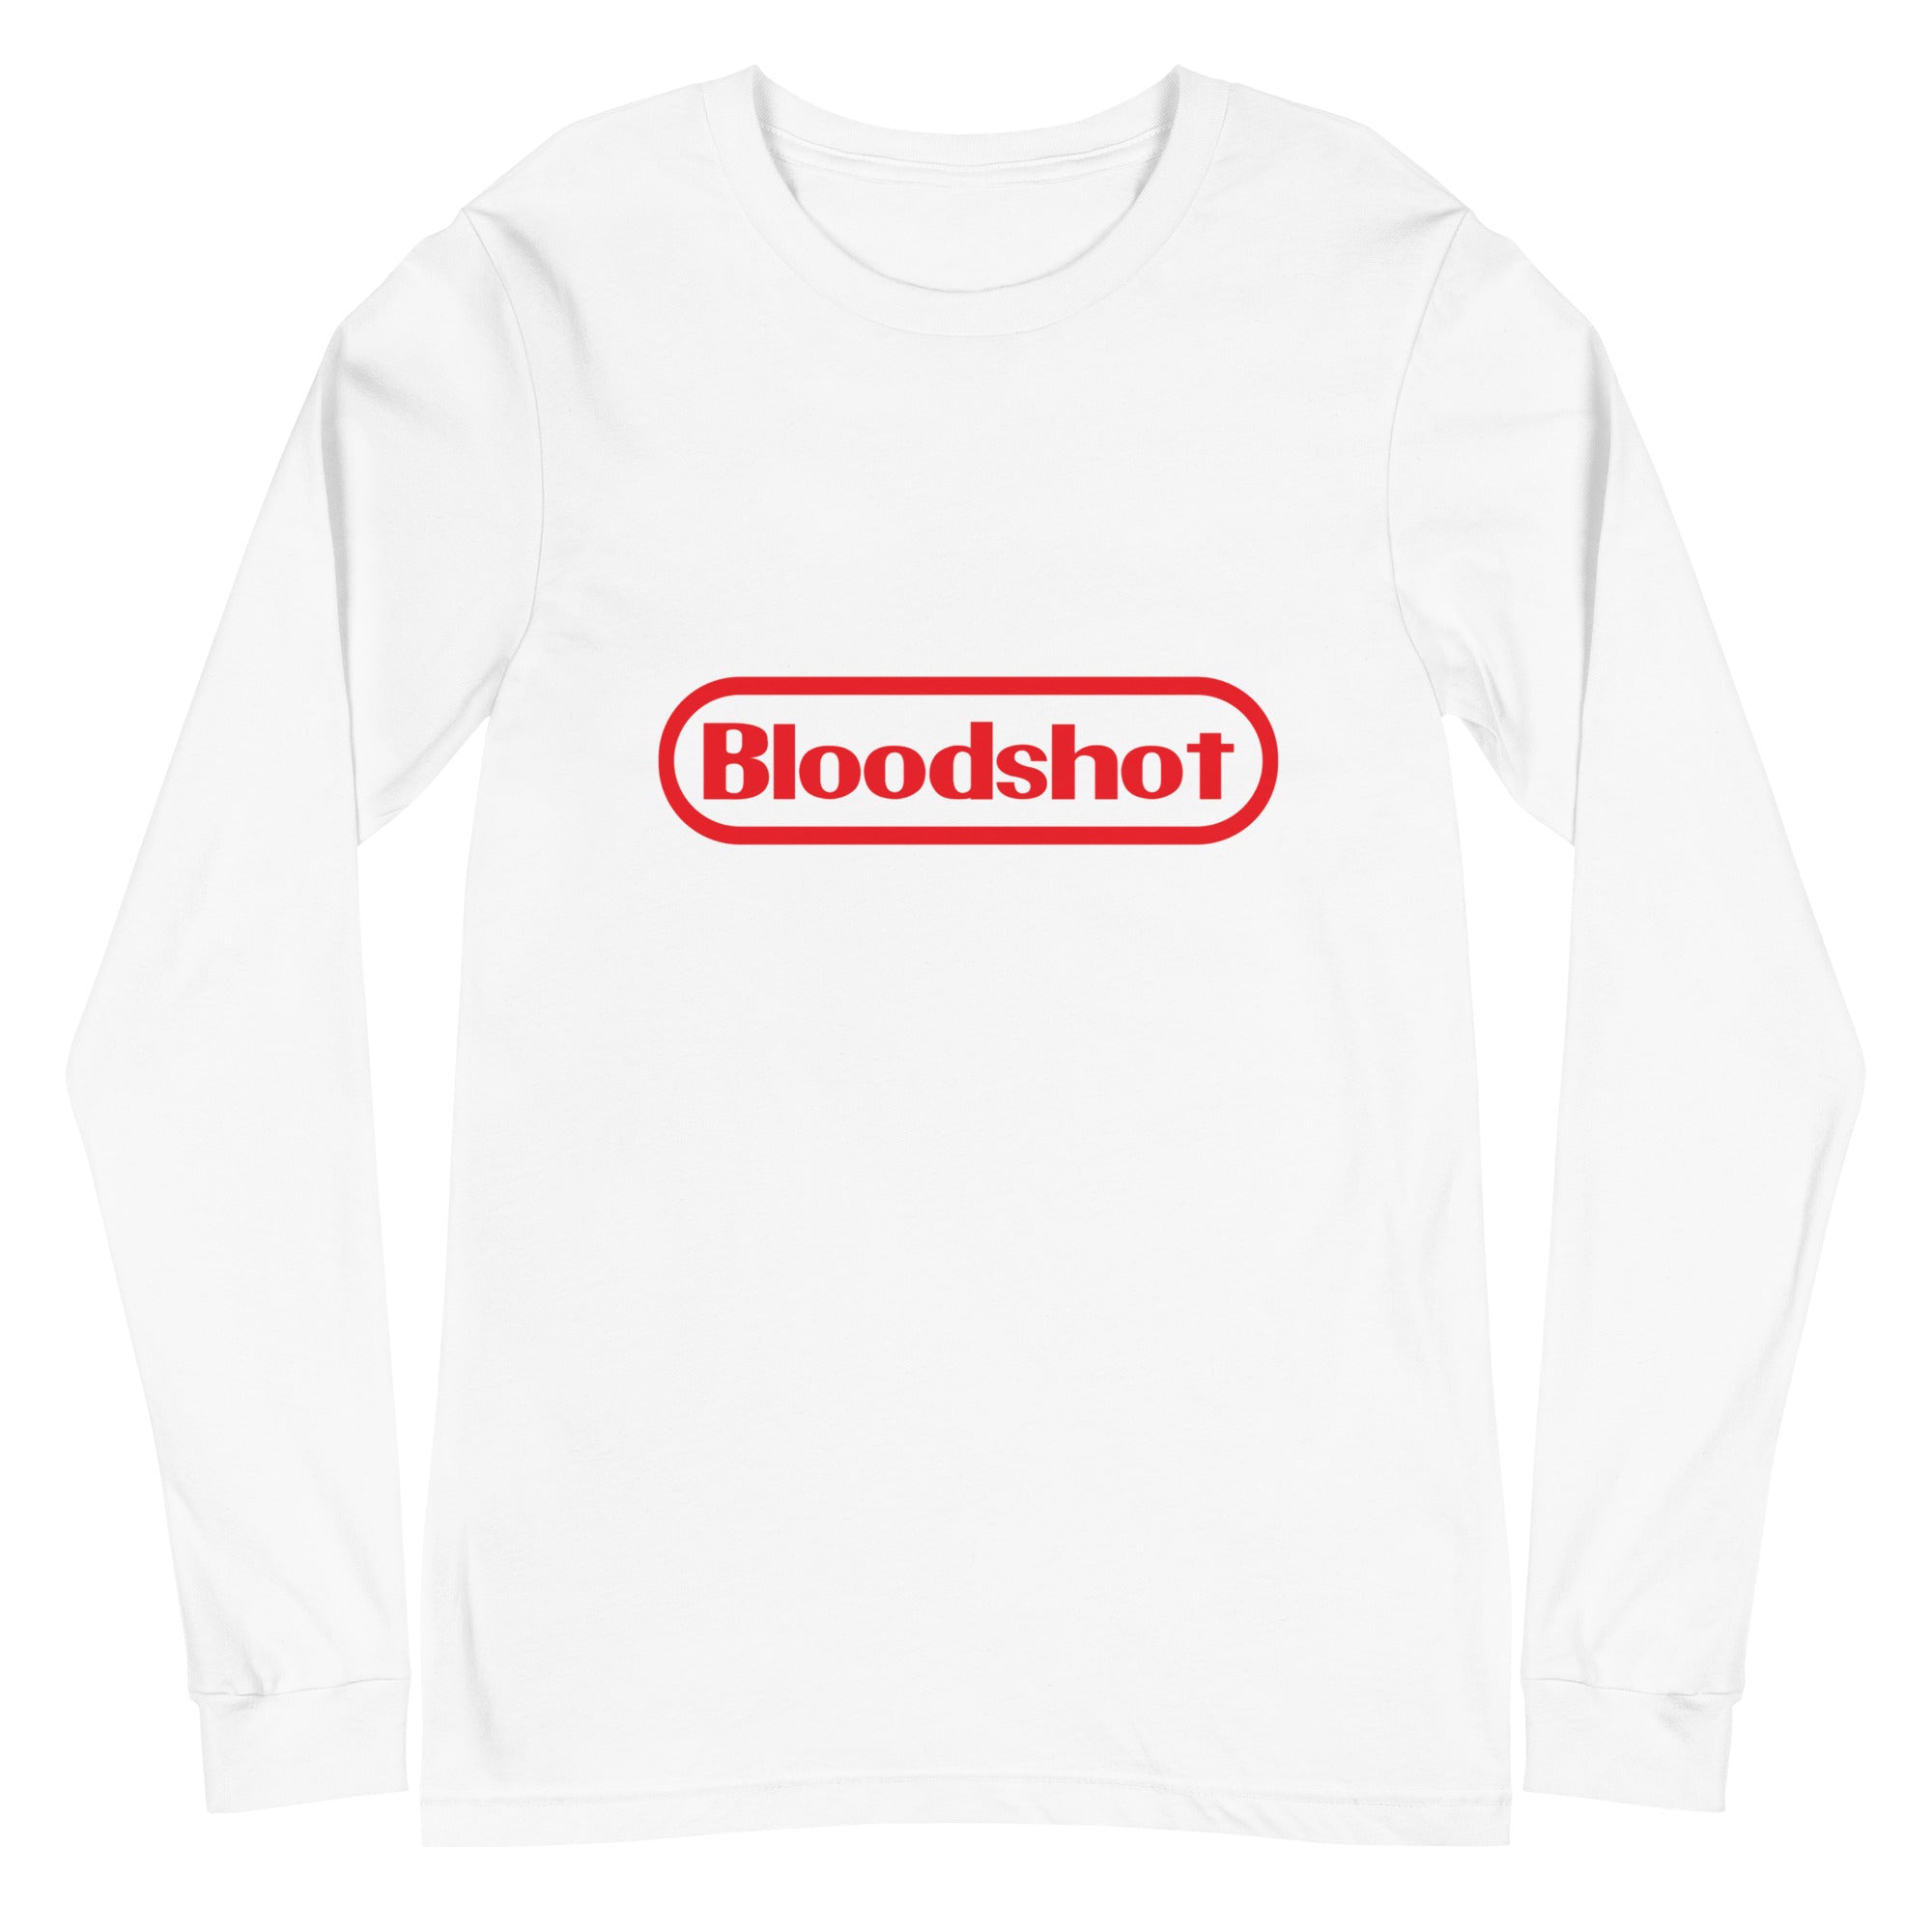 Bloodshot - Unisex Long Sleeve Tee